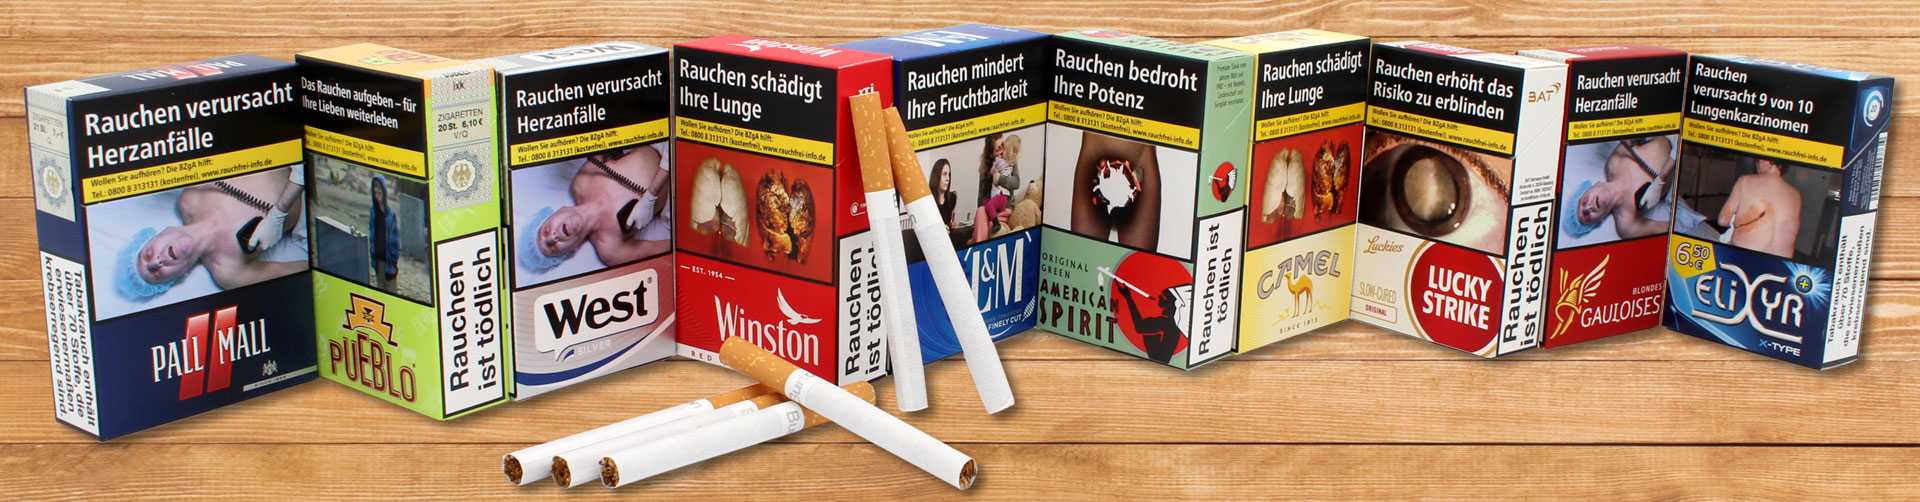 Zigarettenmarken von A - Z wie American Spirit, Pall Mall, Lucky Strike, L&M, Camel, West oder Gauloises online kaufen